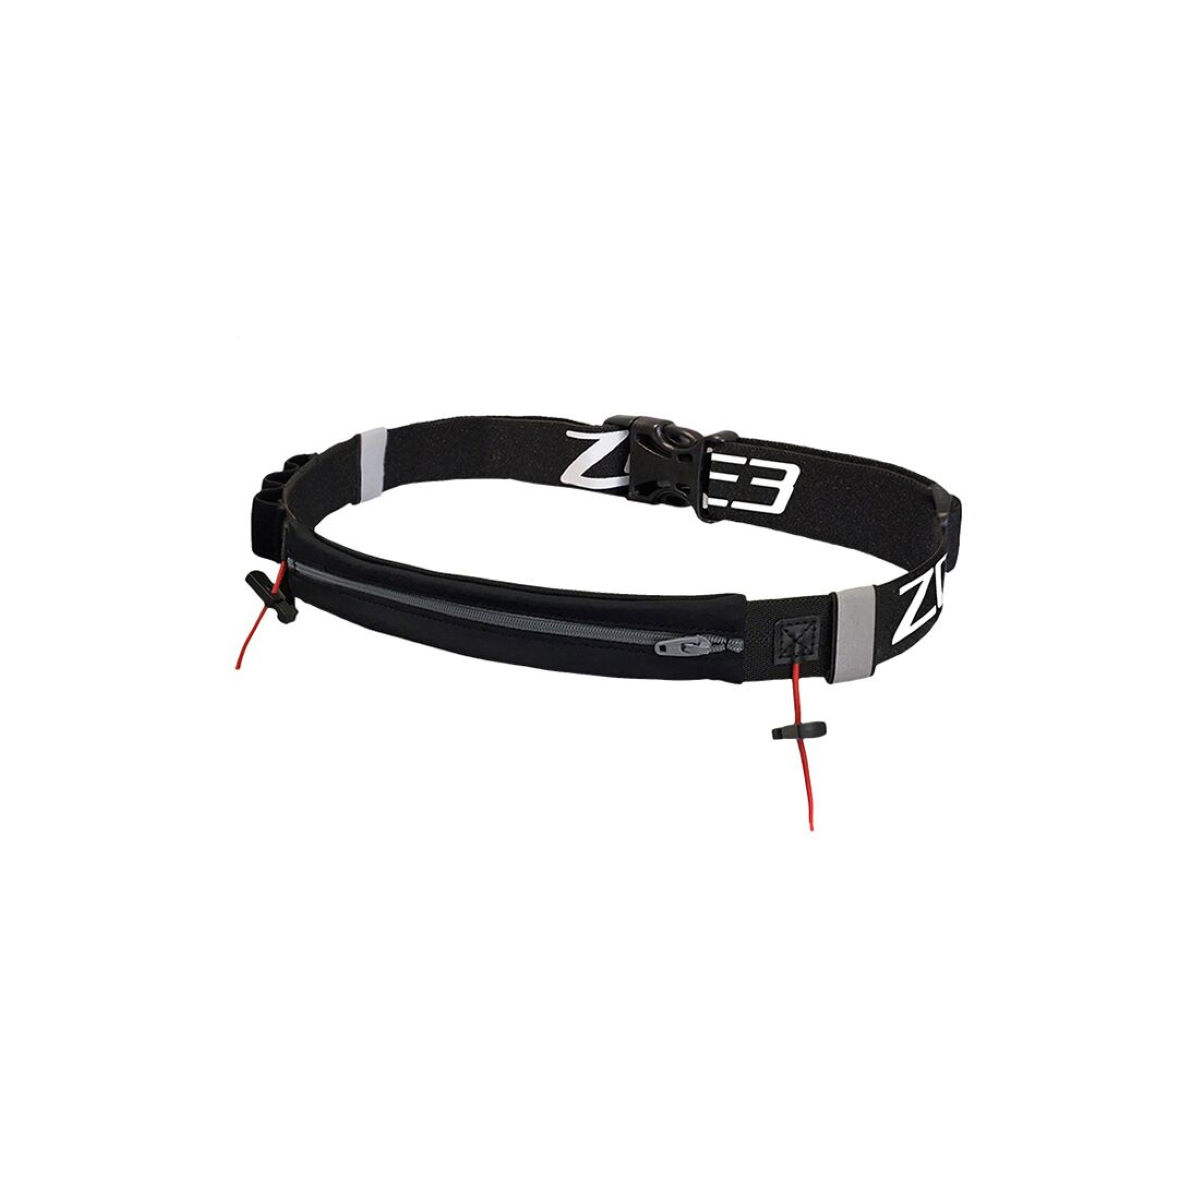 Cinturón portadorsal Zone3 (licra, con bolsillo) - Cinturones portadorsal